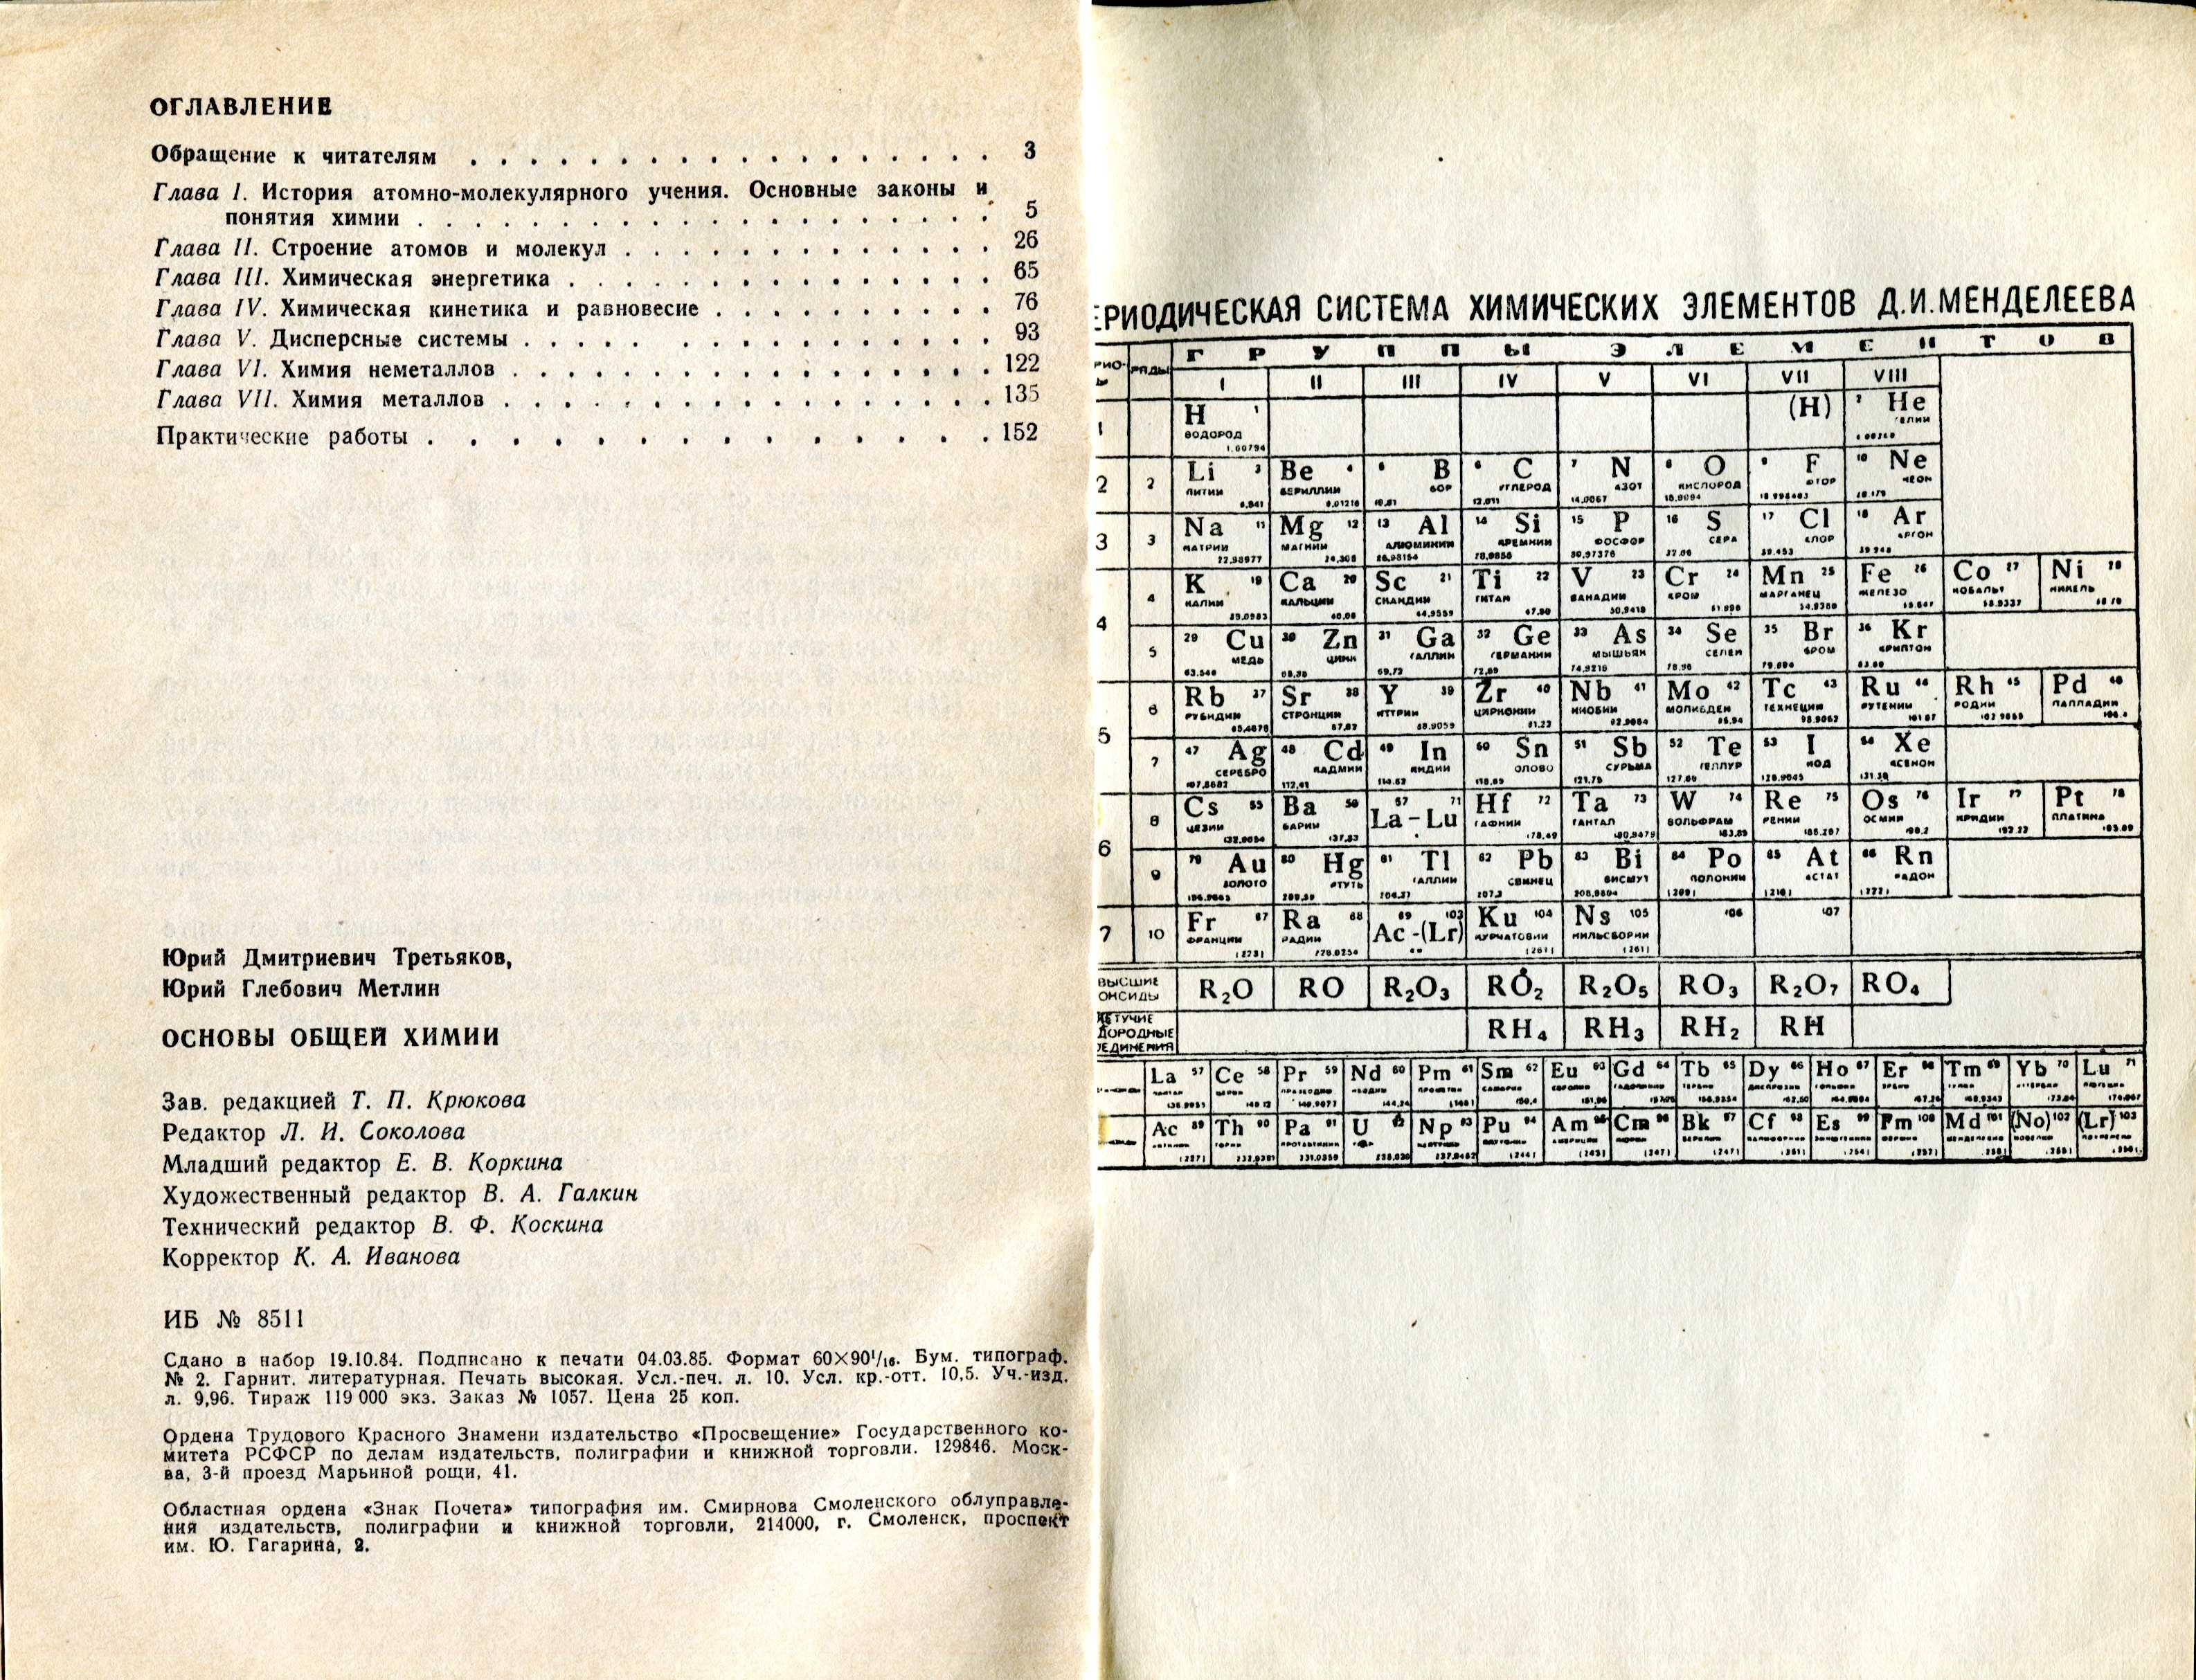 Третьяков Ю., Метлин Ю. Основы общей химии (1985) - 160 с.